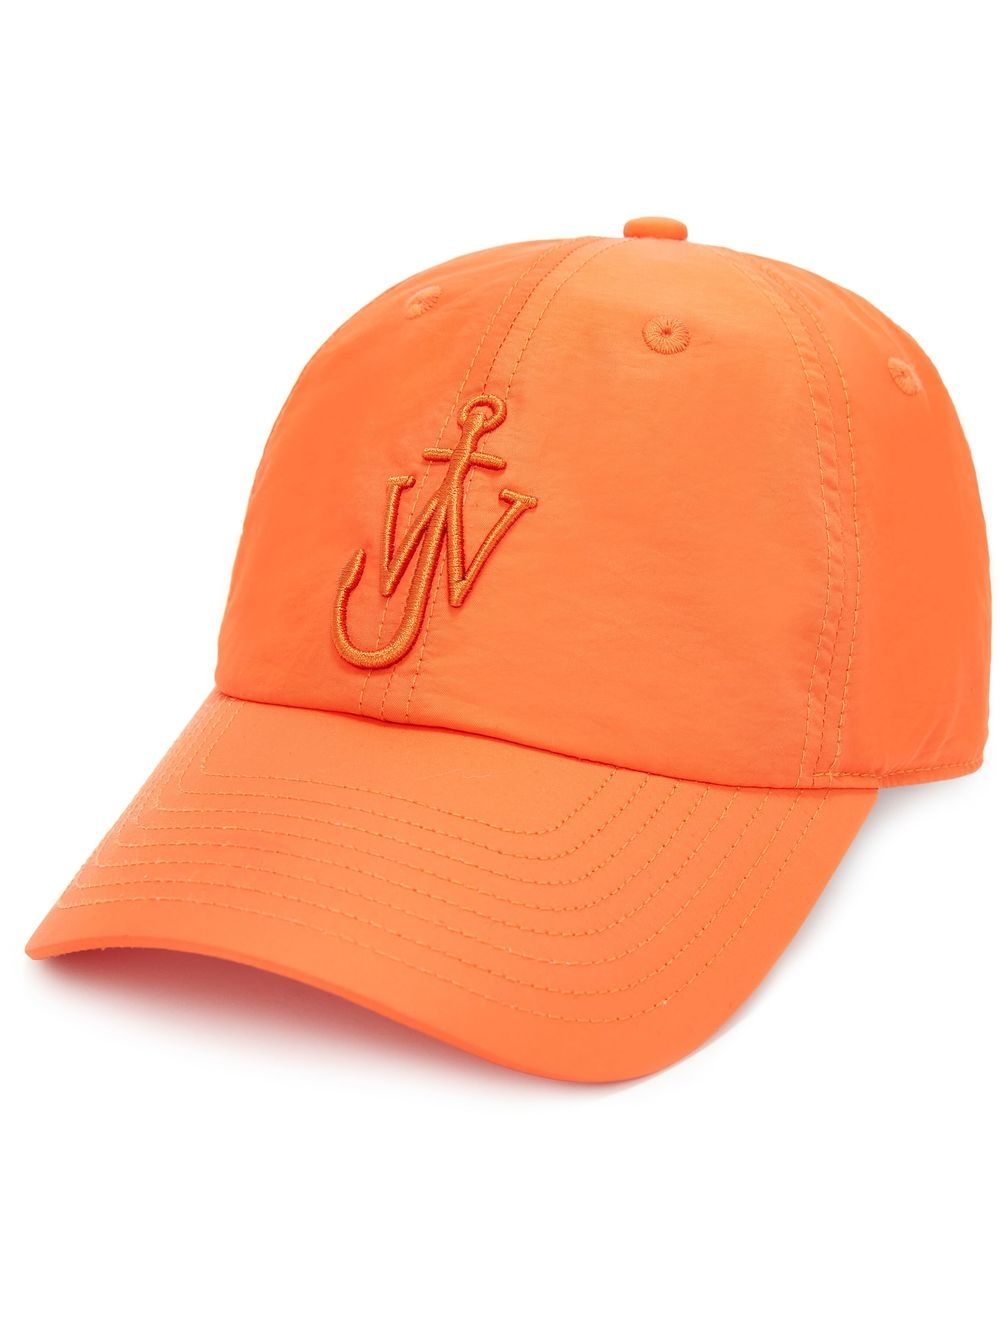 JW Anderson Anchor baseball cap - Orange von JW Anderson